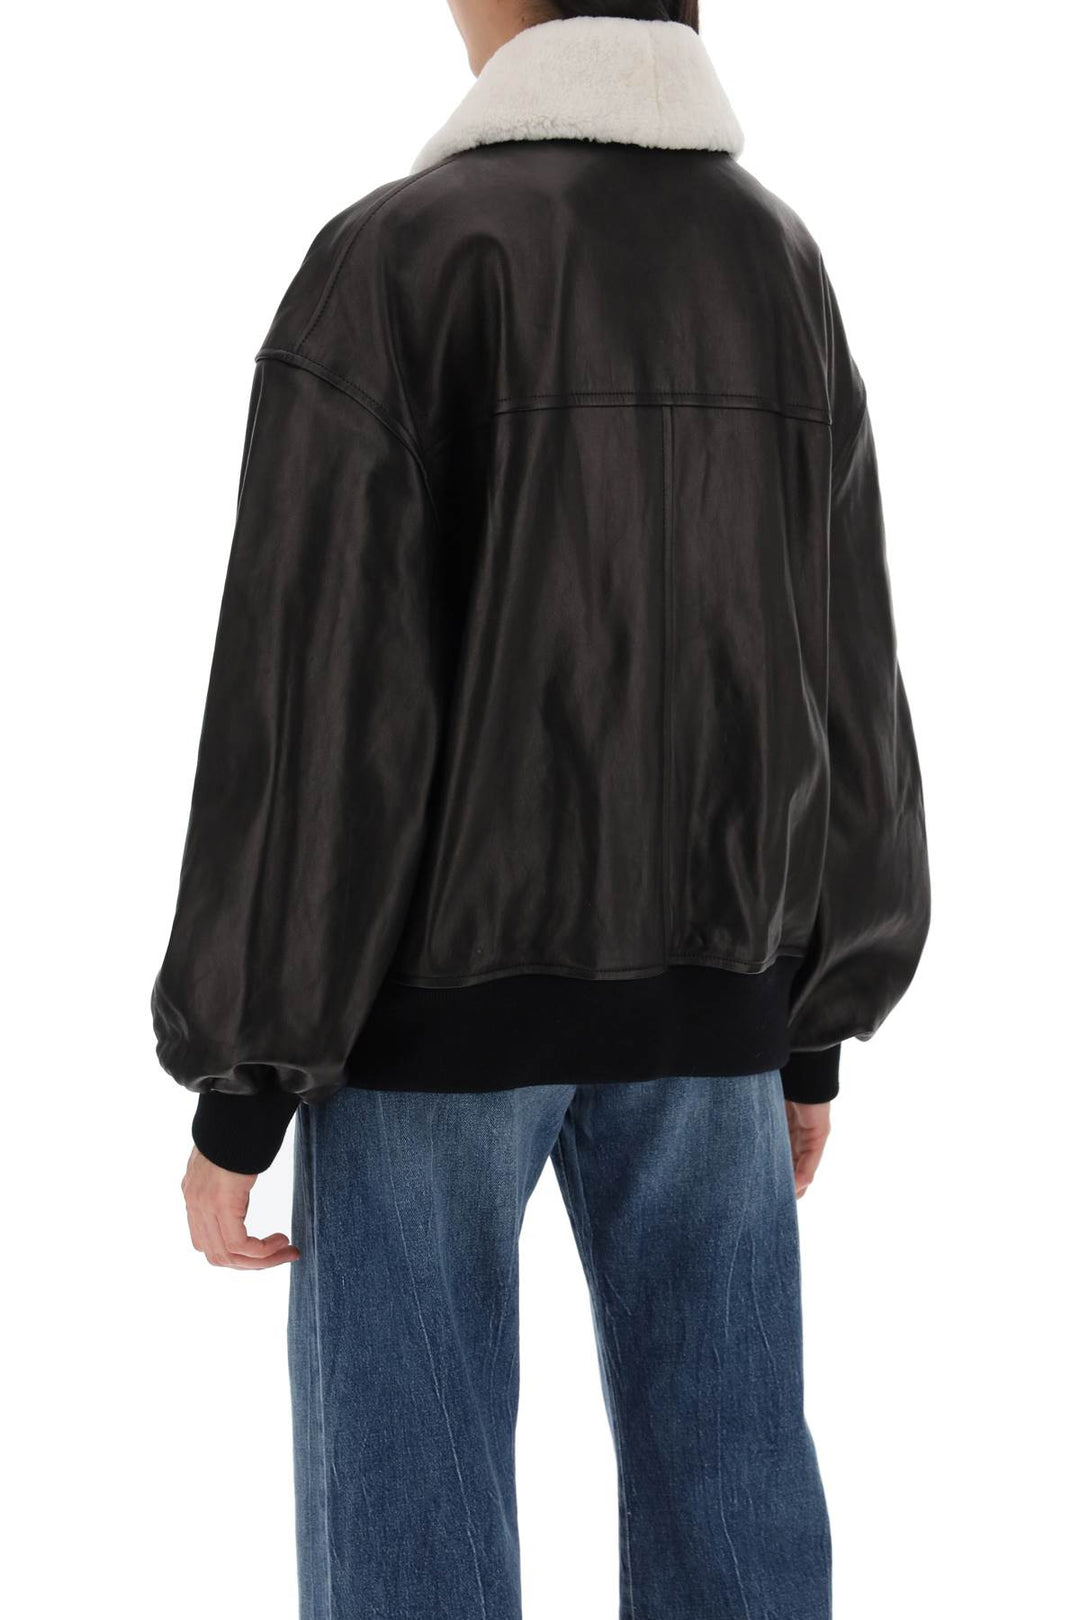 Khaite Leather Shellar Jacket   Black